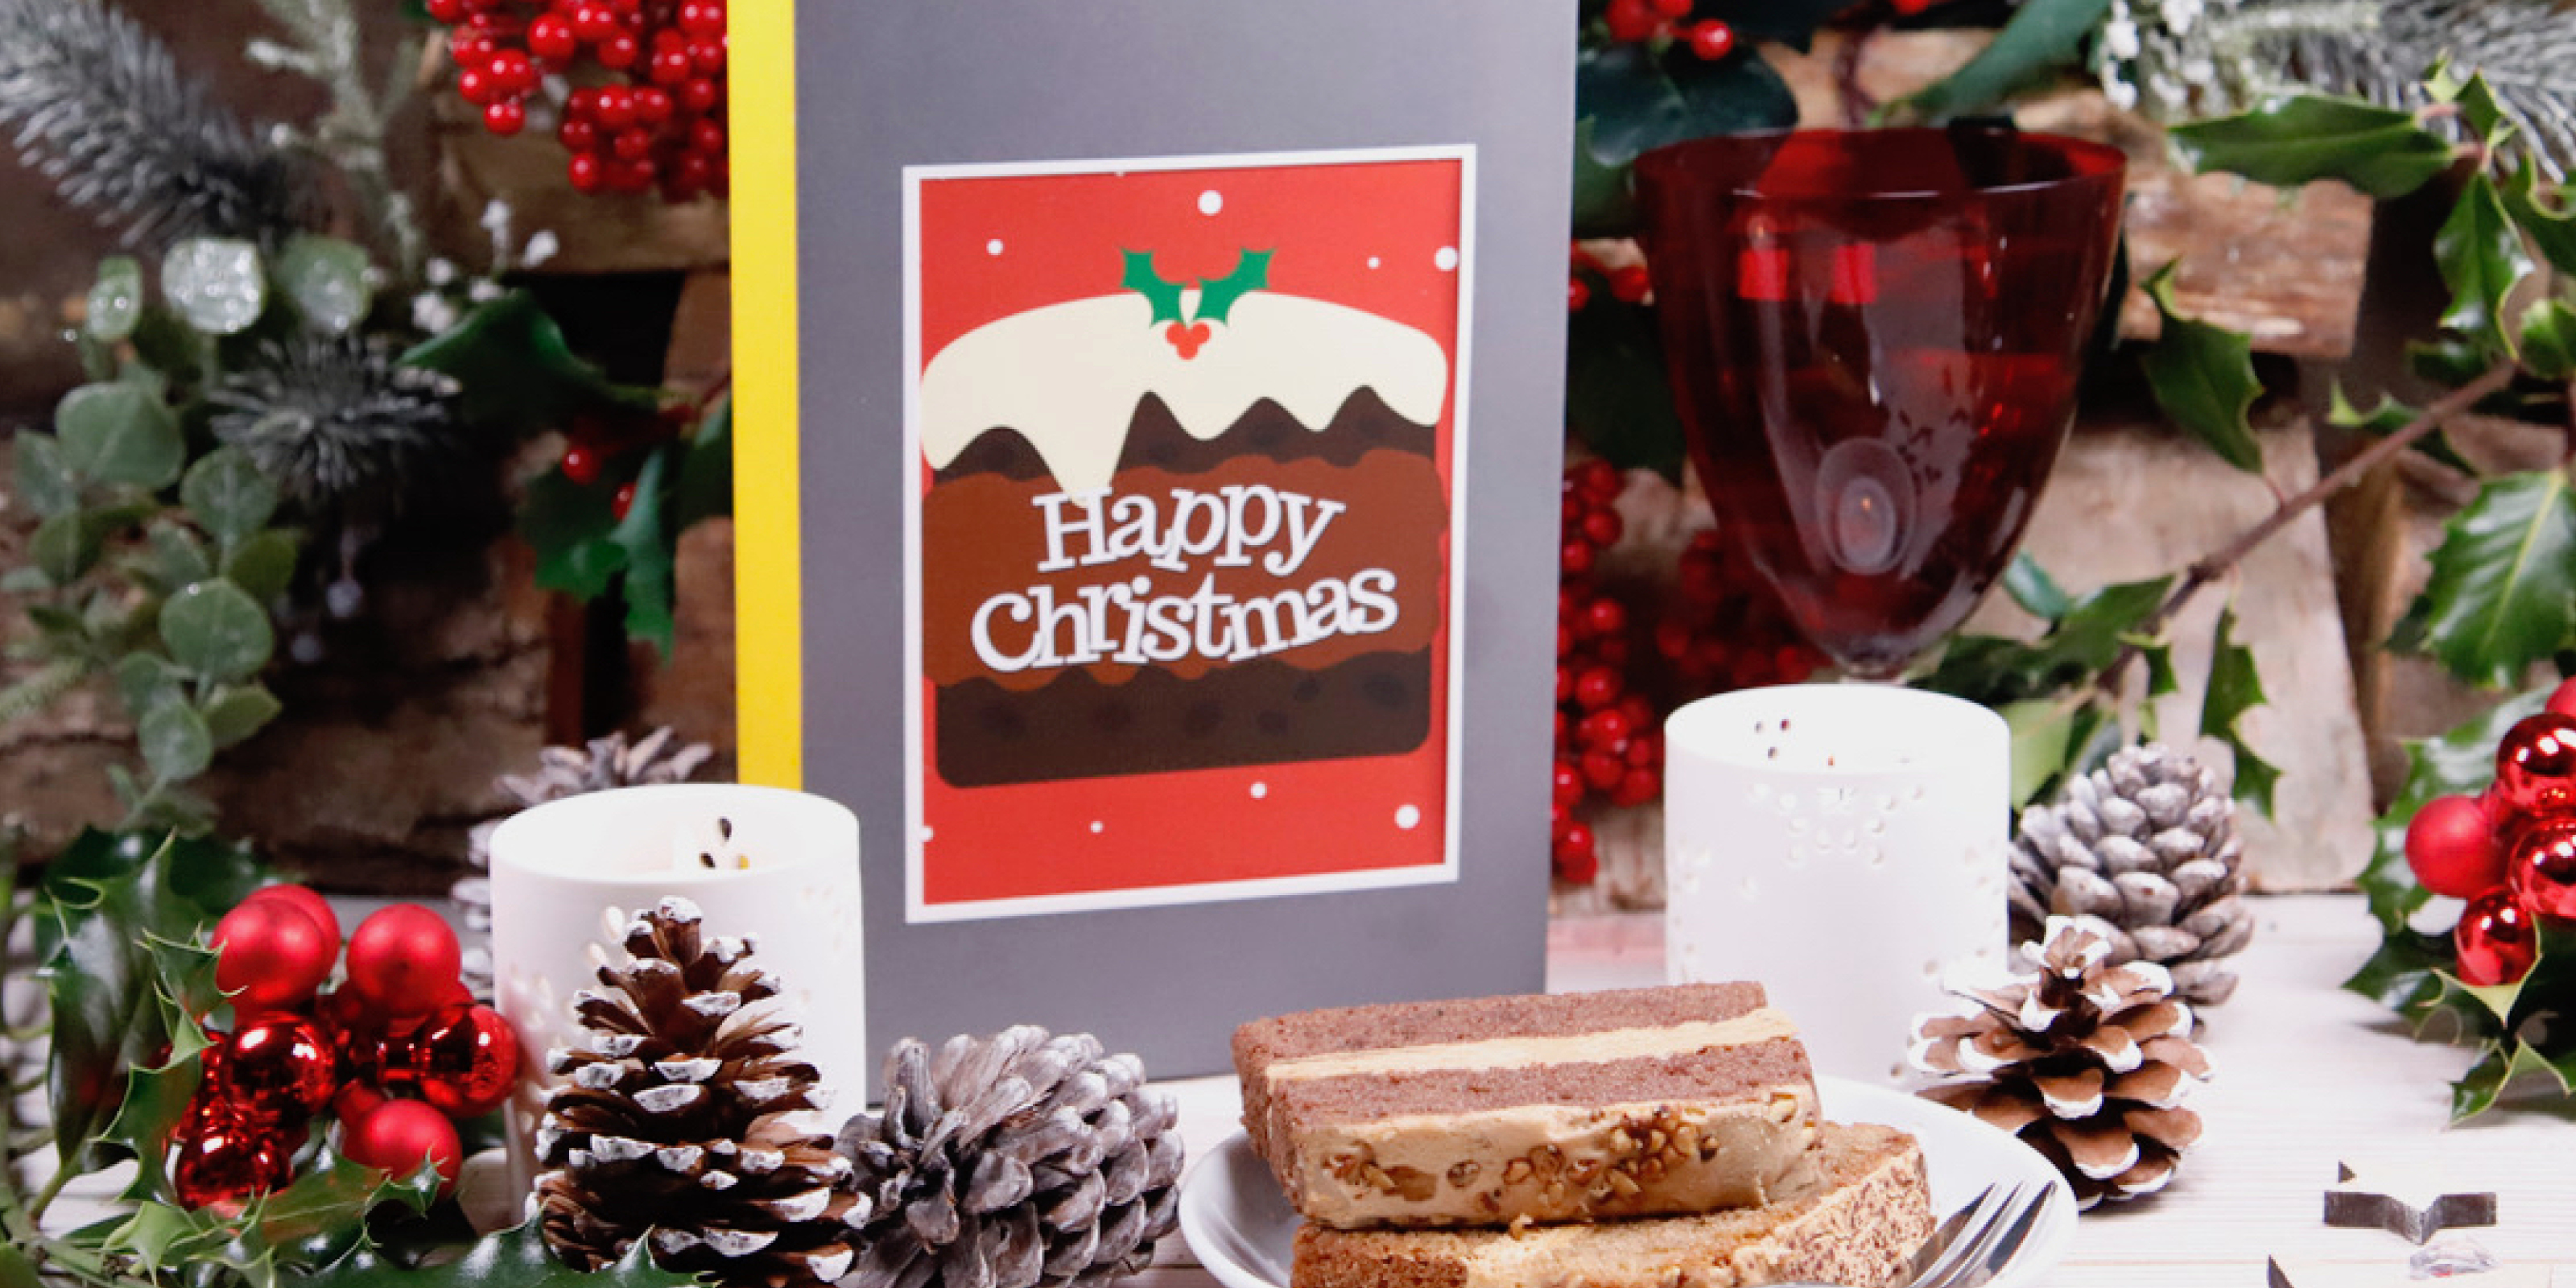 M&S Iced Fruit Cake Christmas Cake with Father Christmas Santa Claus card  set on white background - UK festive Xmas Stock Photo - Alamy